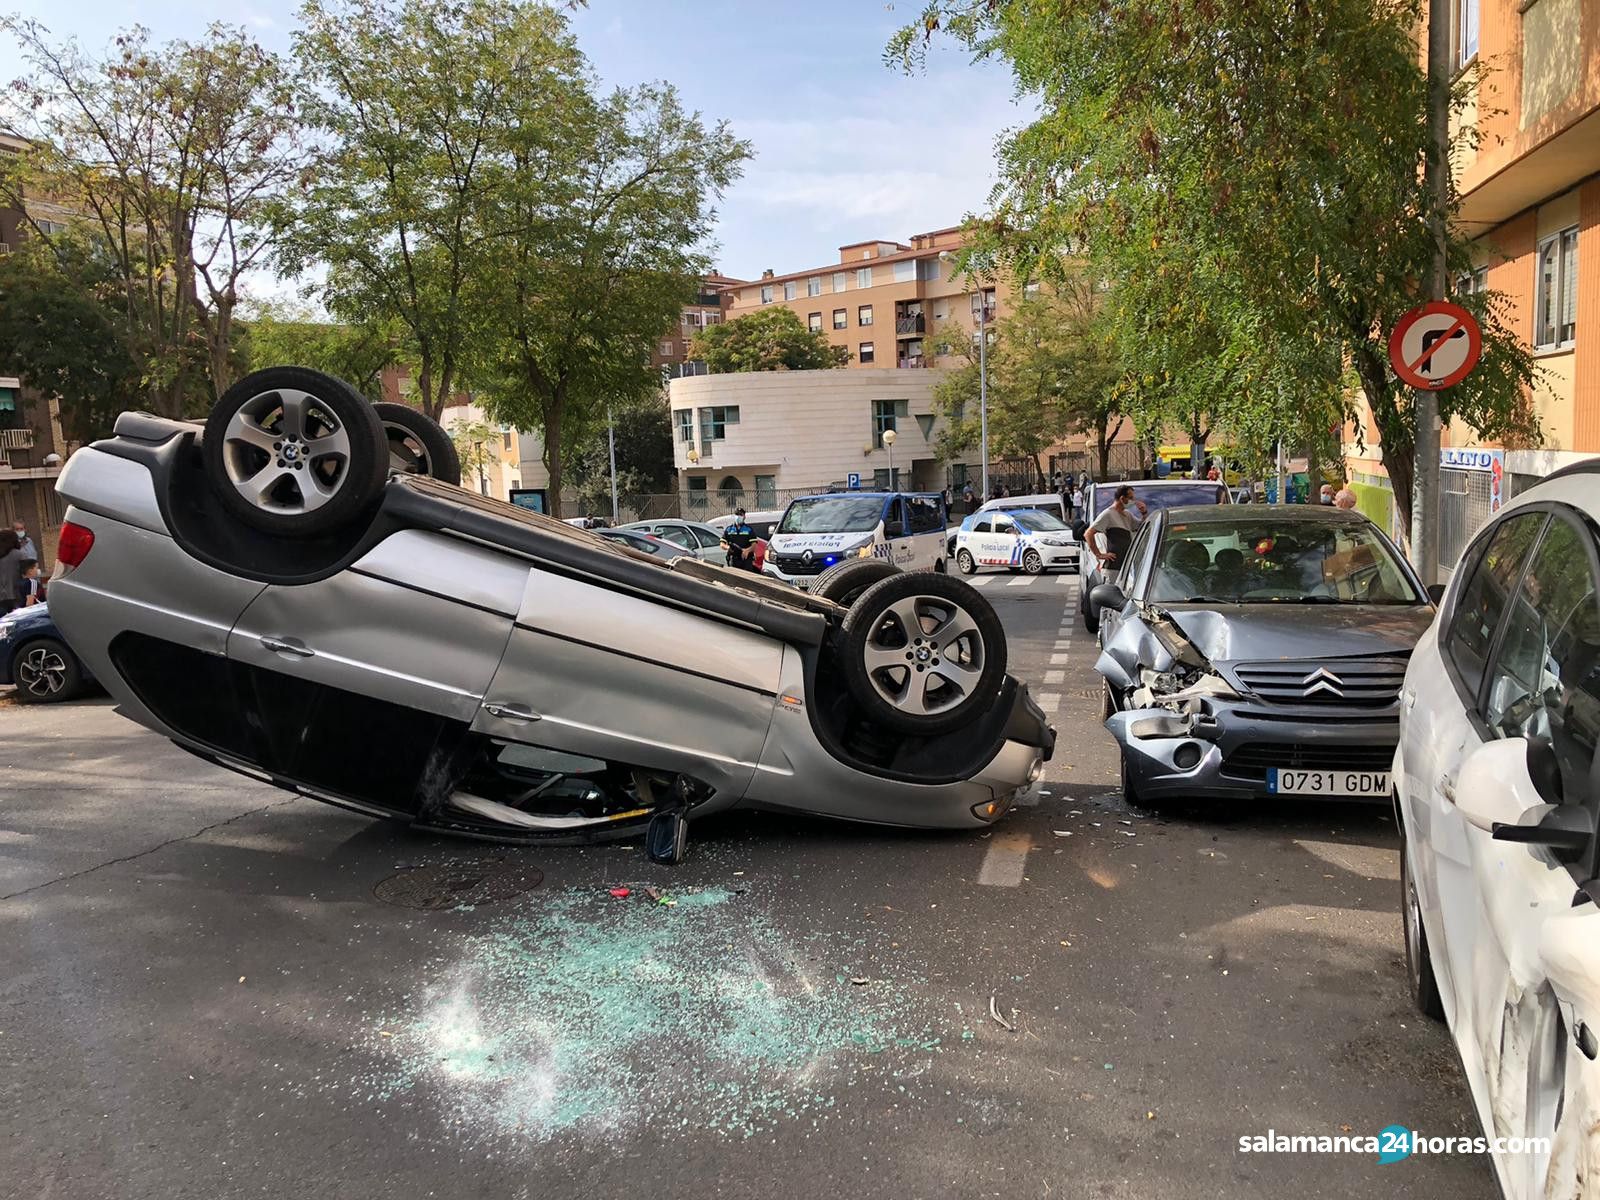  Accidente calle Alfareros (3) 